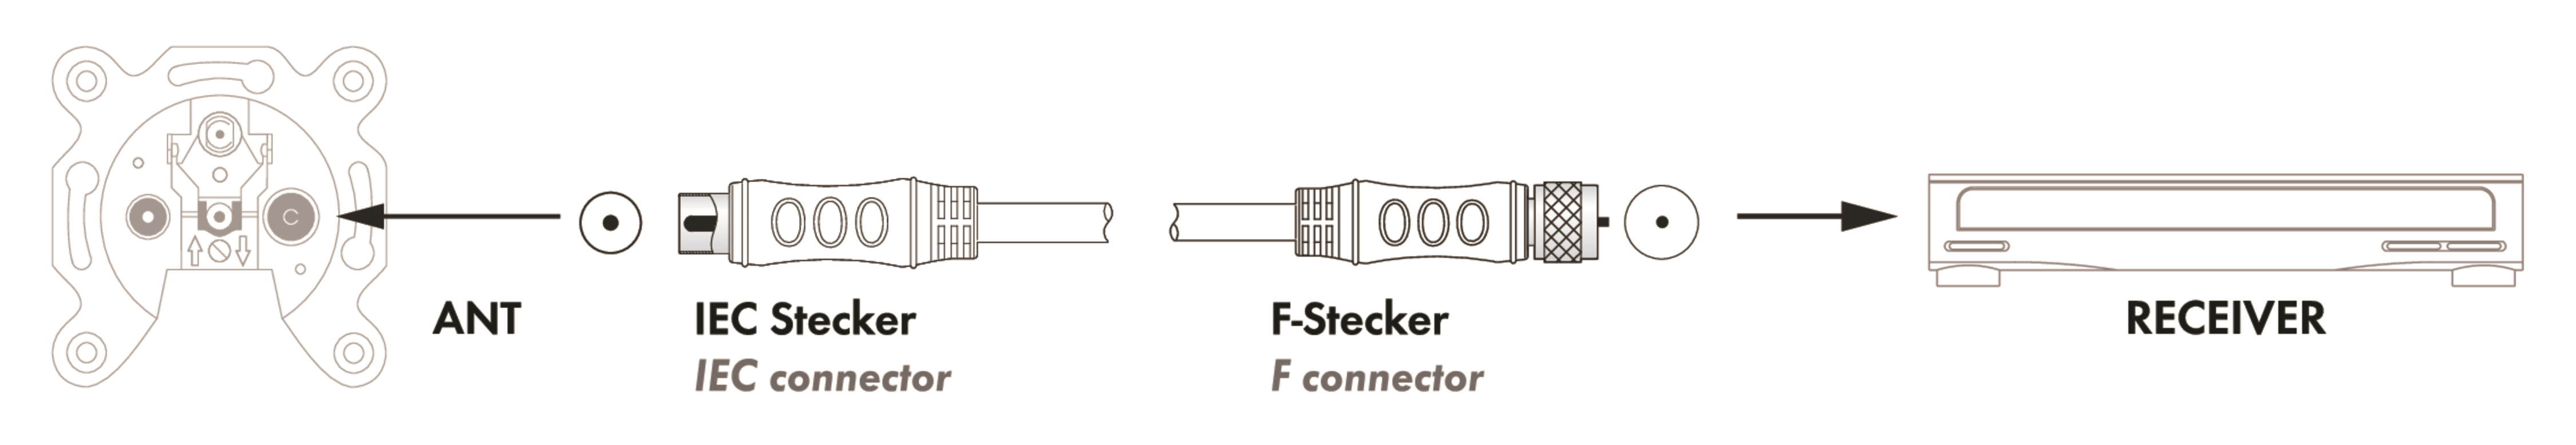 F-Stecker IEC Adapterkabel 532- Stecker SAT/Antennen SCHWAIGER dB) -KVCKHQ183 zu (90